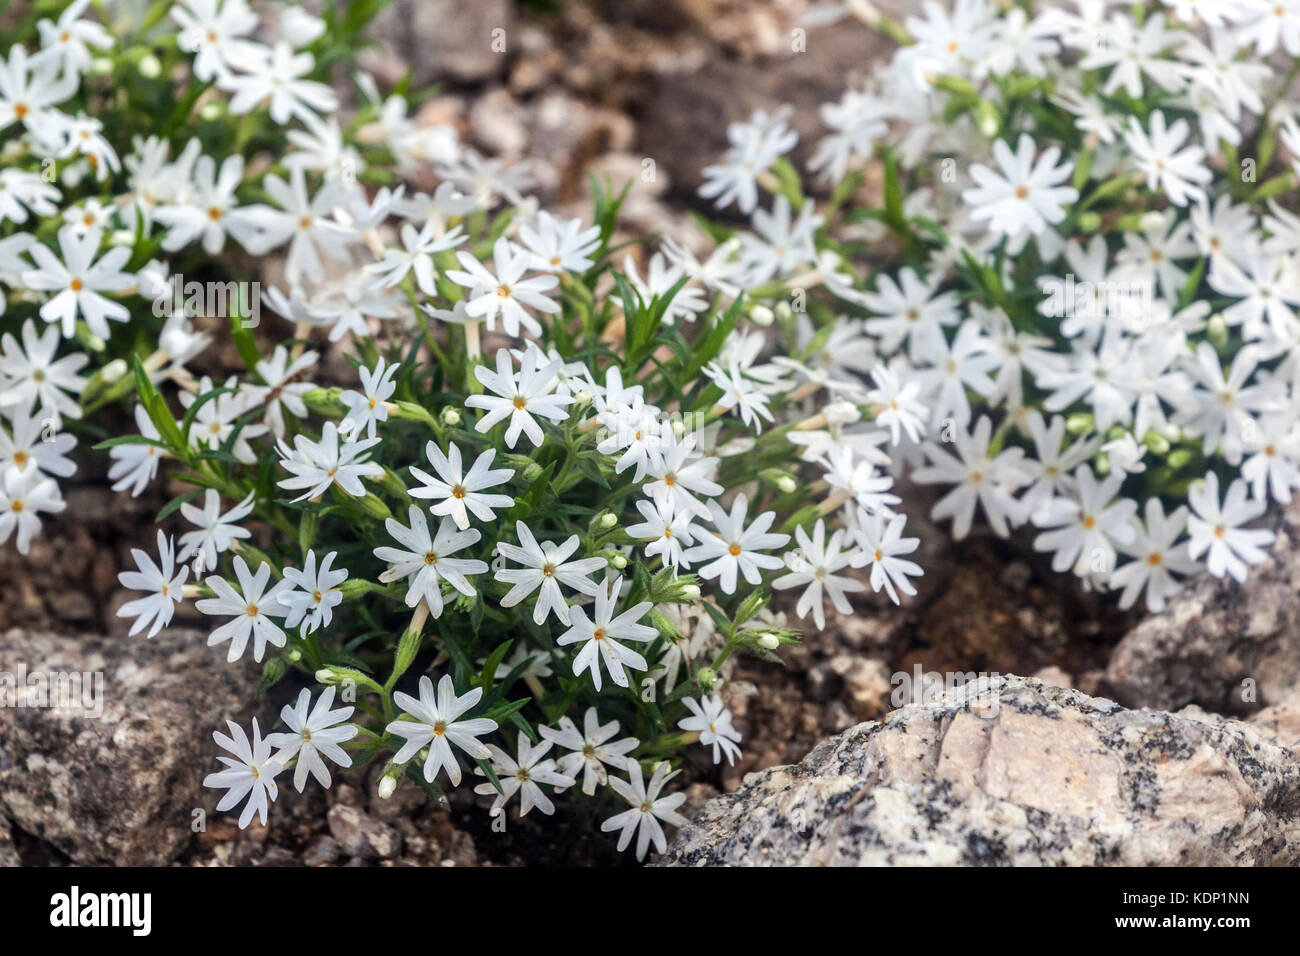 Phlox 'Snow Flake' to rock garden White flowers Stock Photo